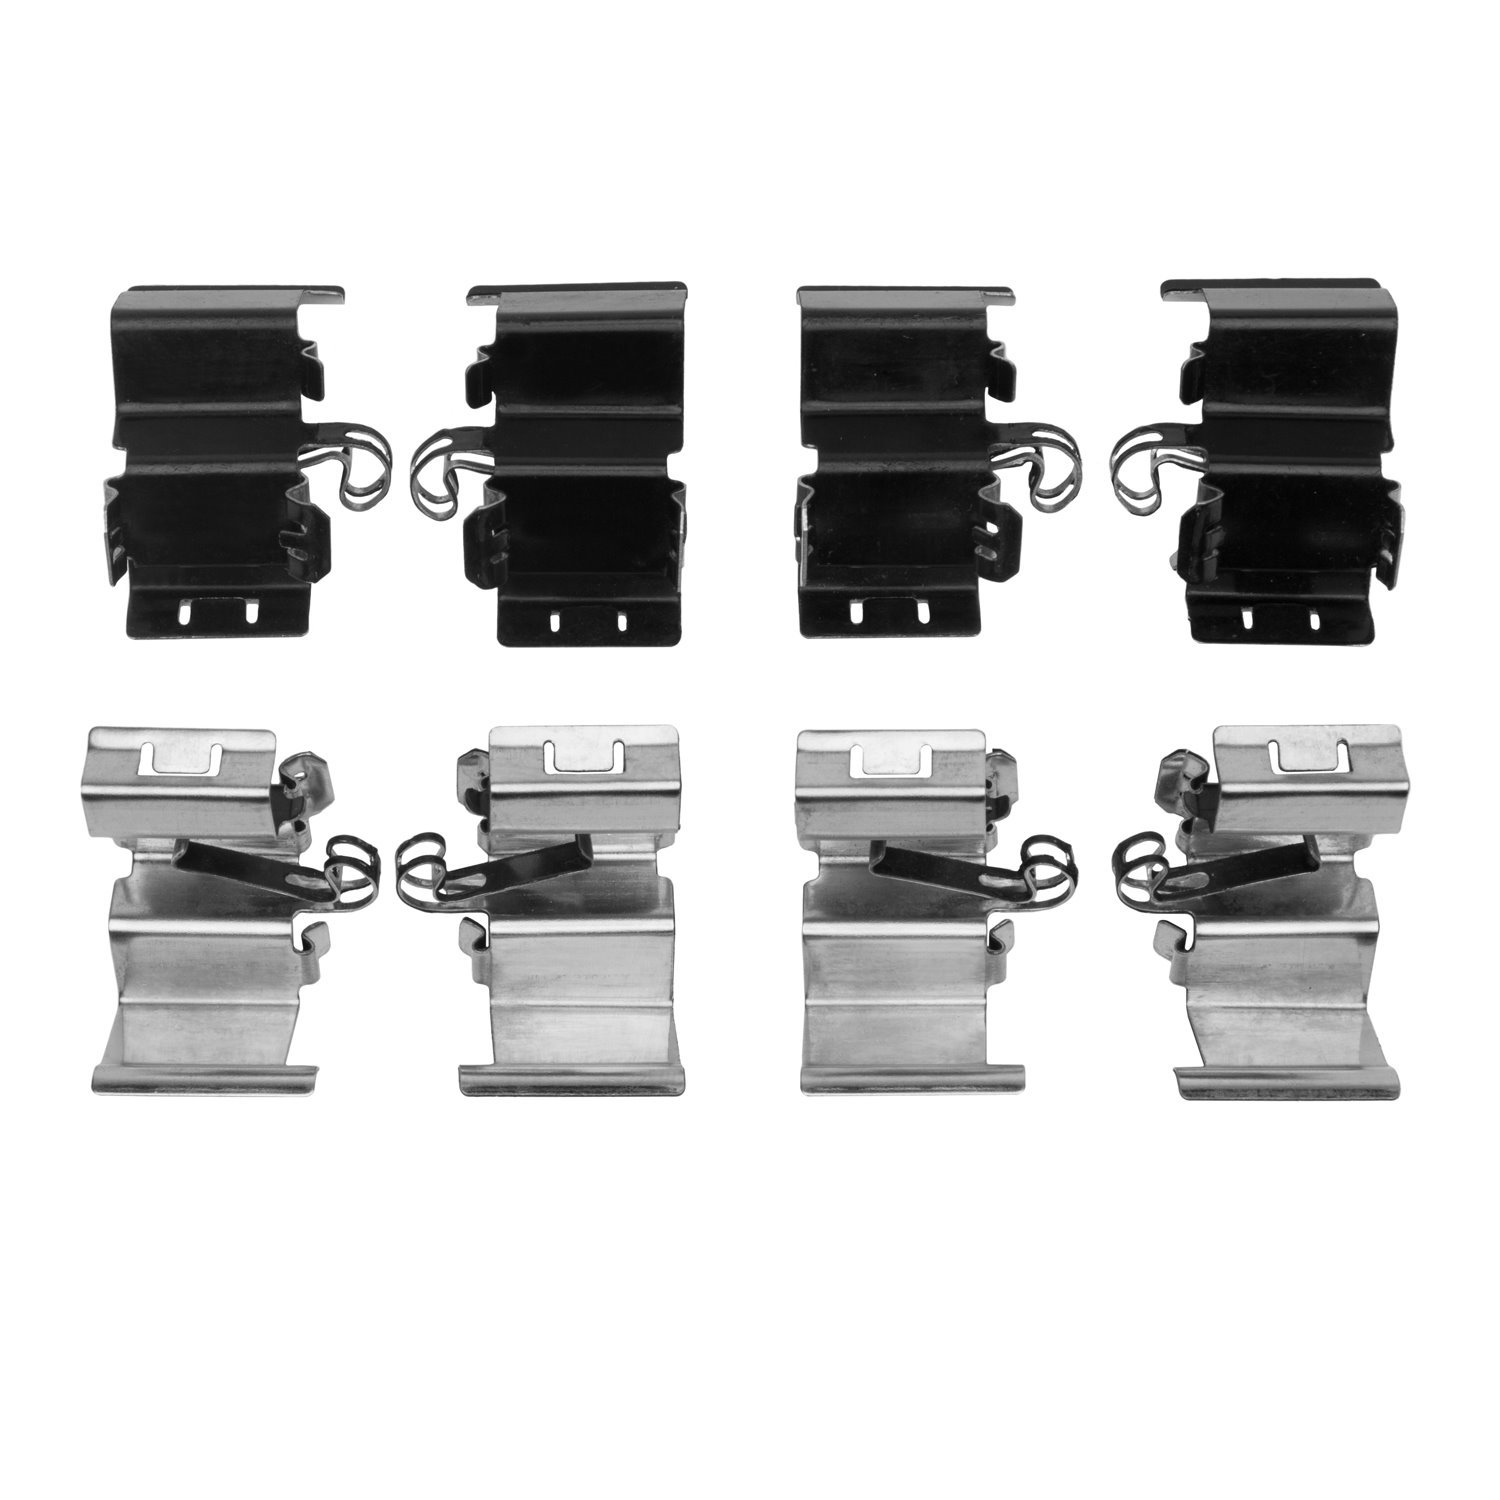 340-40036 Disc Brake Hardware Kit, Fits Select Multiple Makes/Models, Position: Front,Fr,Fr & Rr,Rear,Rr